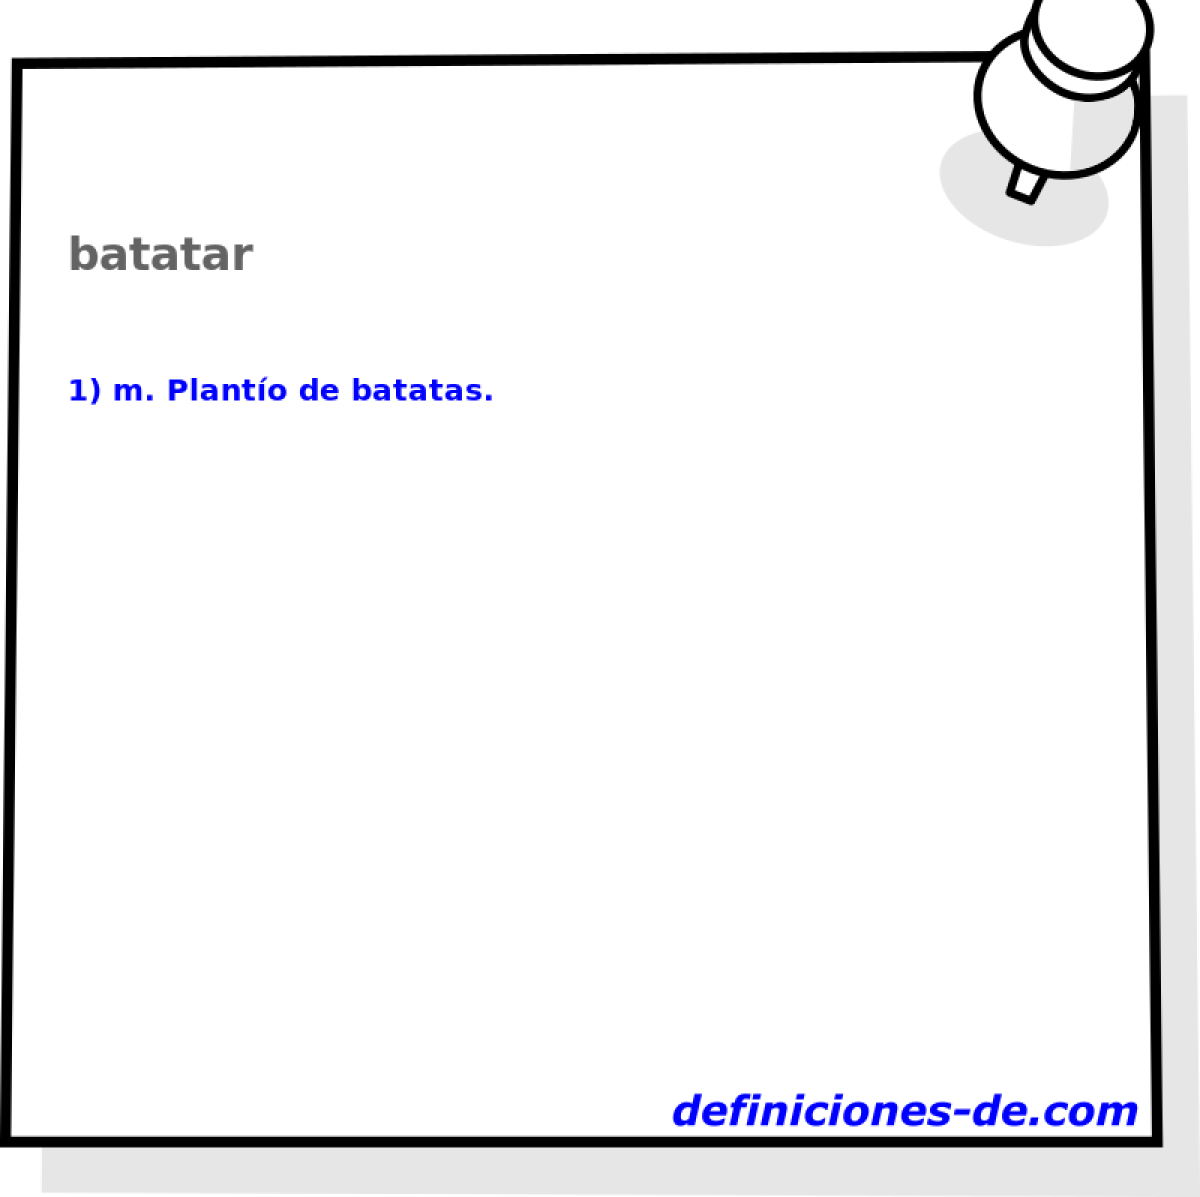 batatar 